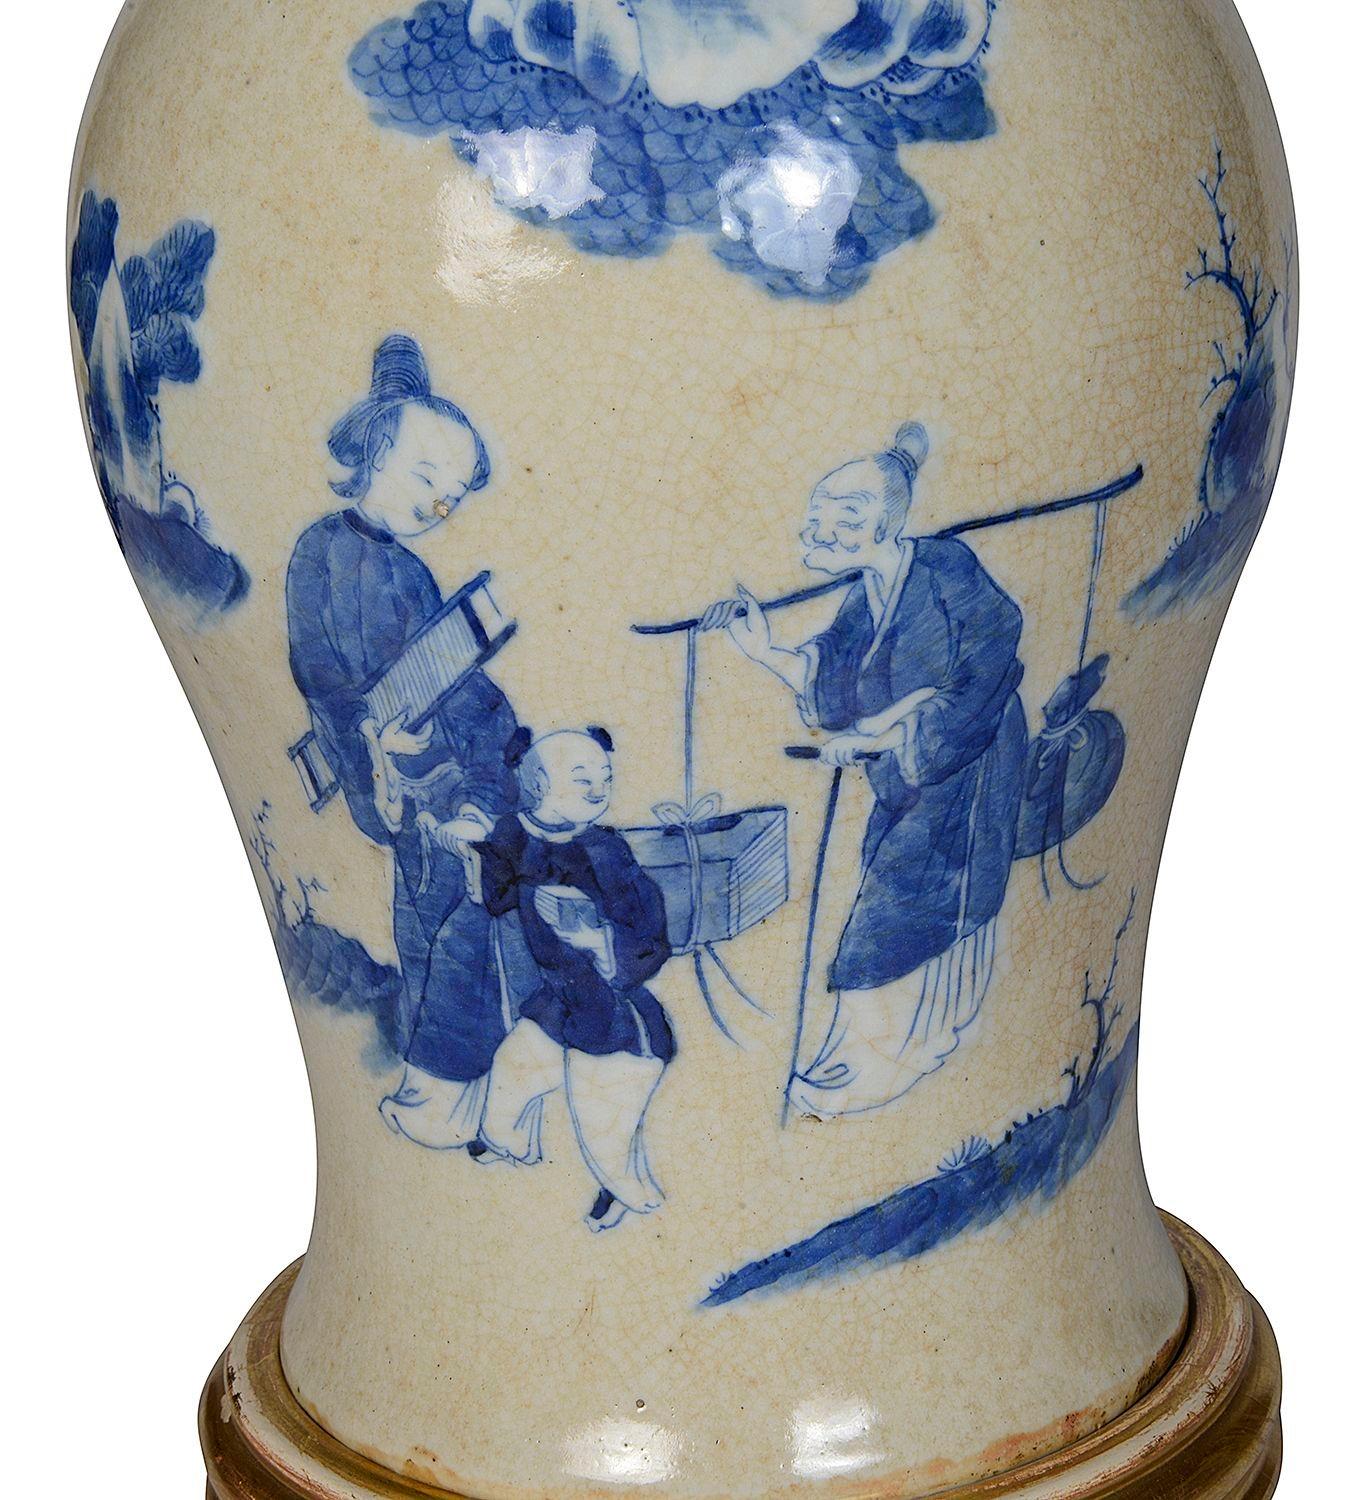 Vase/lampe chinois(e) du 19e siècle en faïence bleue et blanche. Scène classique représentant une mère et son enfant s'adressant à un voyageur, deux poignées en bronze en forme de goutte d'eau dans la gueule d'un chien de chasse.
Lot 74 G9981/23 YNKZ